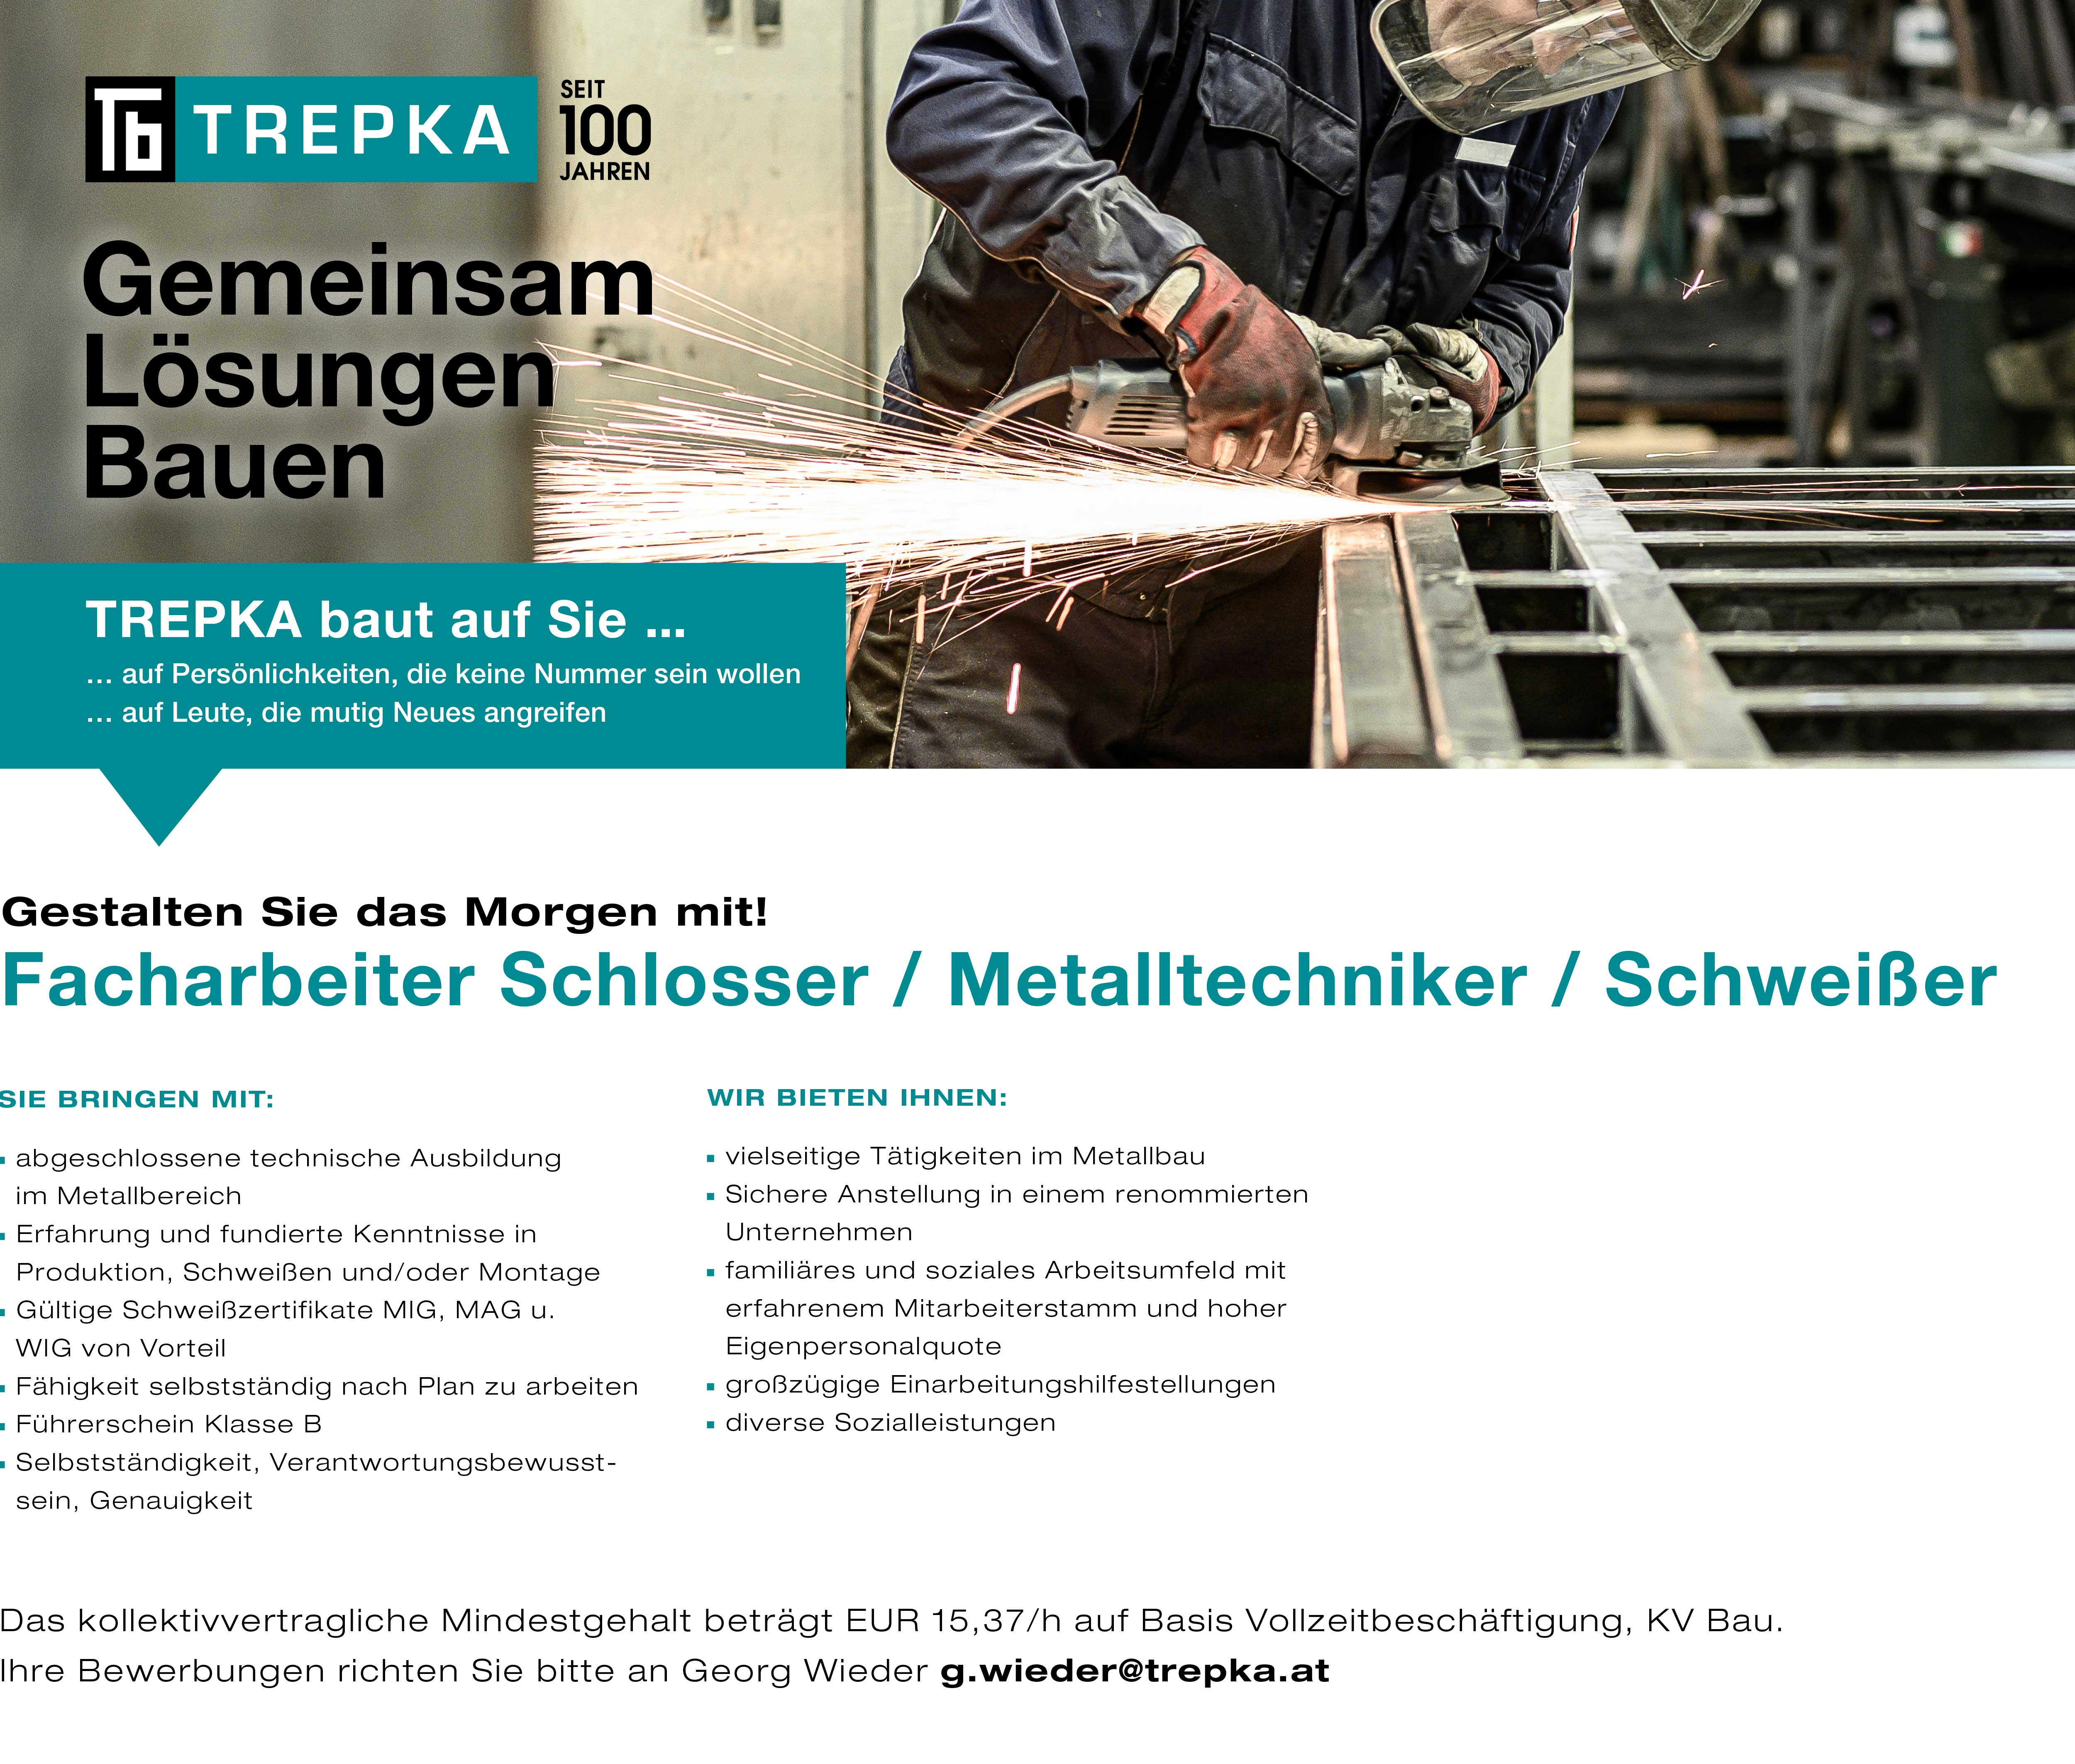 Job als Facharbeiter Schlosser / Metalltechniker / Schweißer Vollzeit in Ober-Grafendorf bei Trepka.